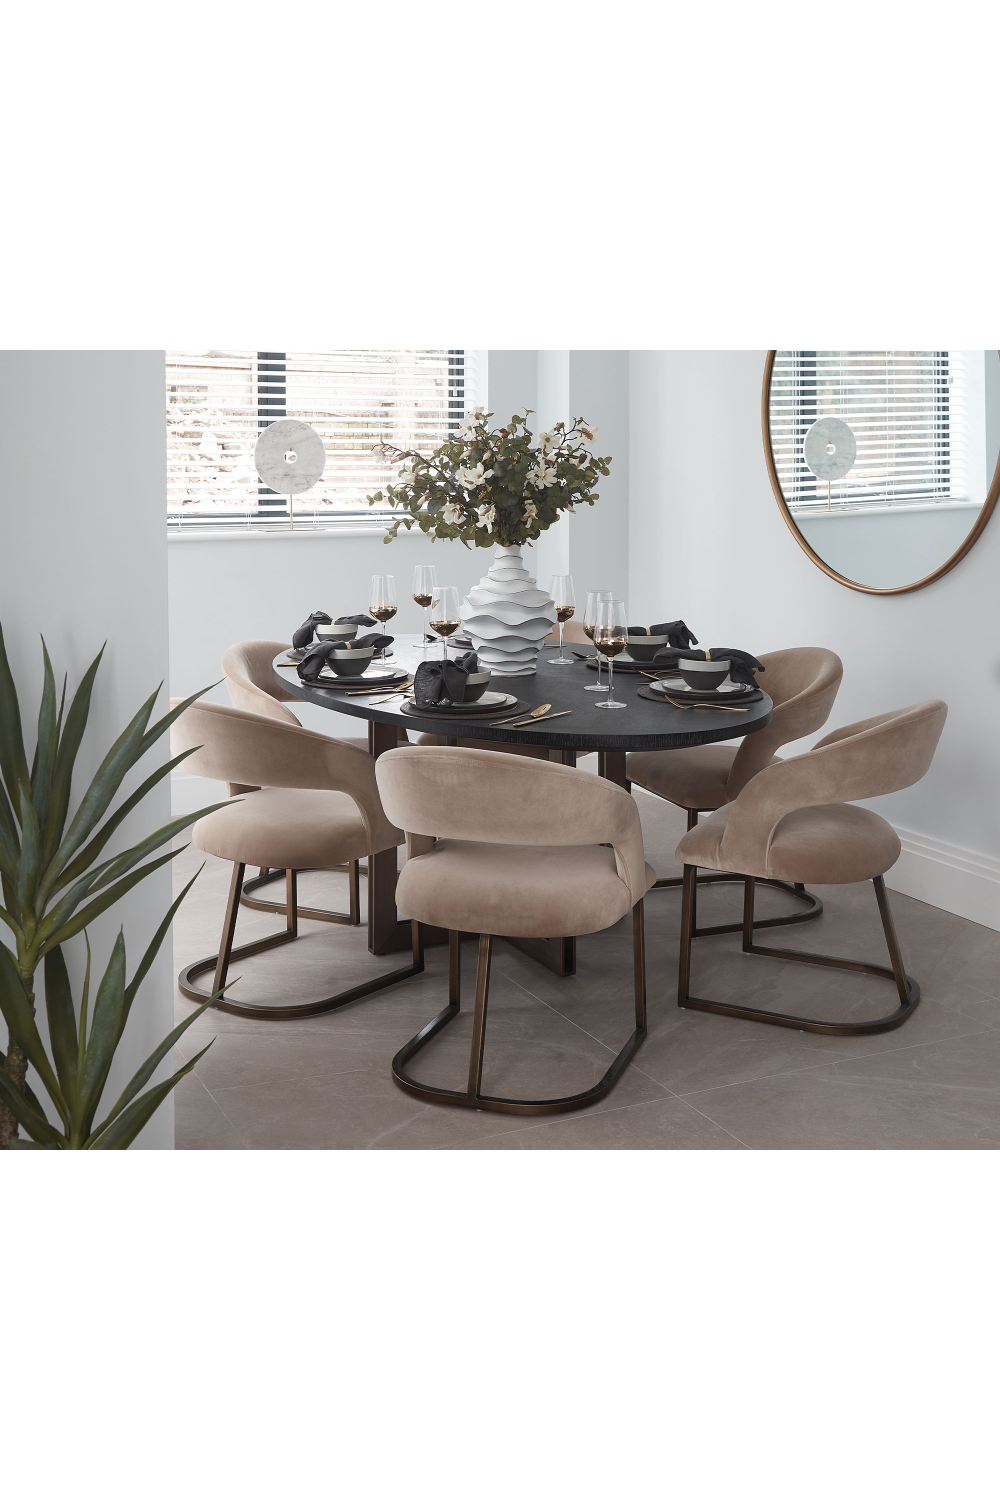 Mink Velvet Upholstered Dining Chair | Liang & Eimil Alfie | Oroa.com